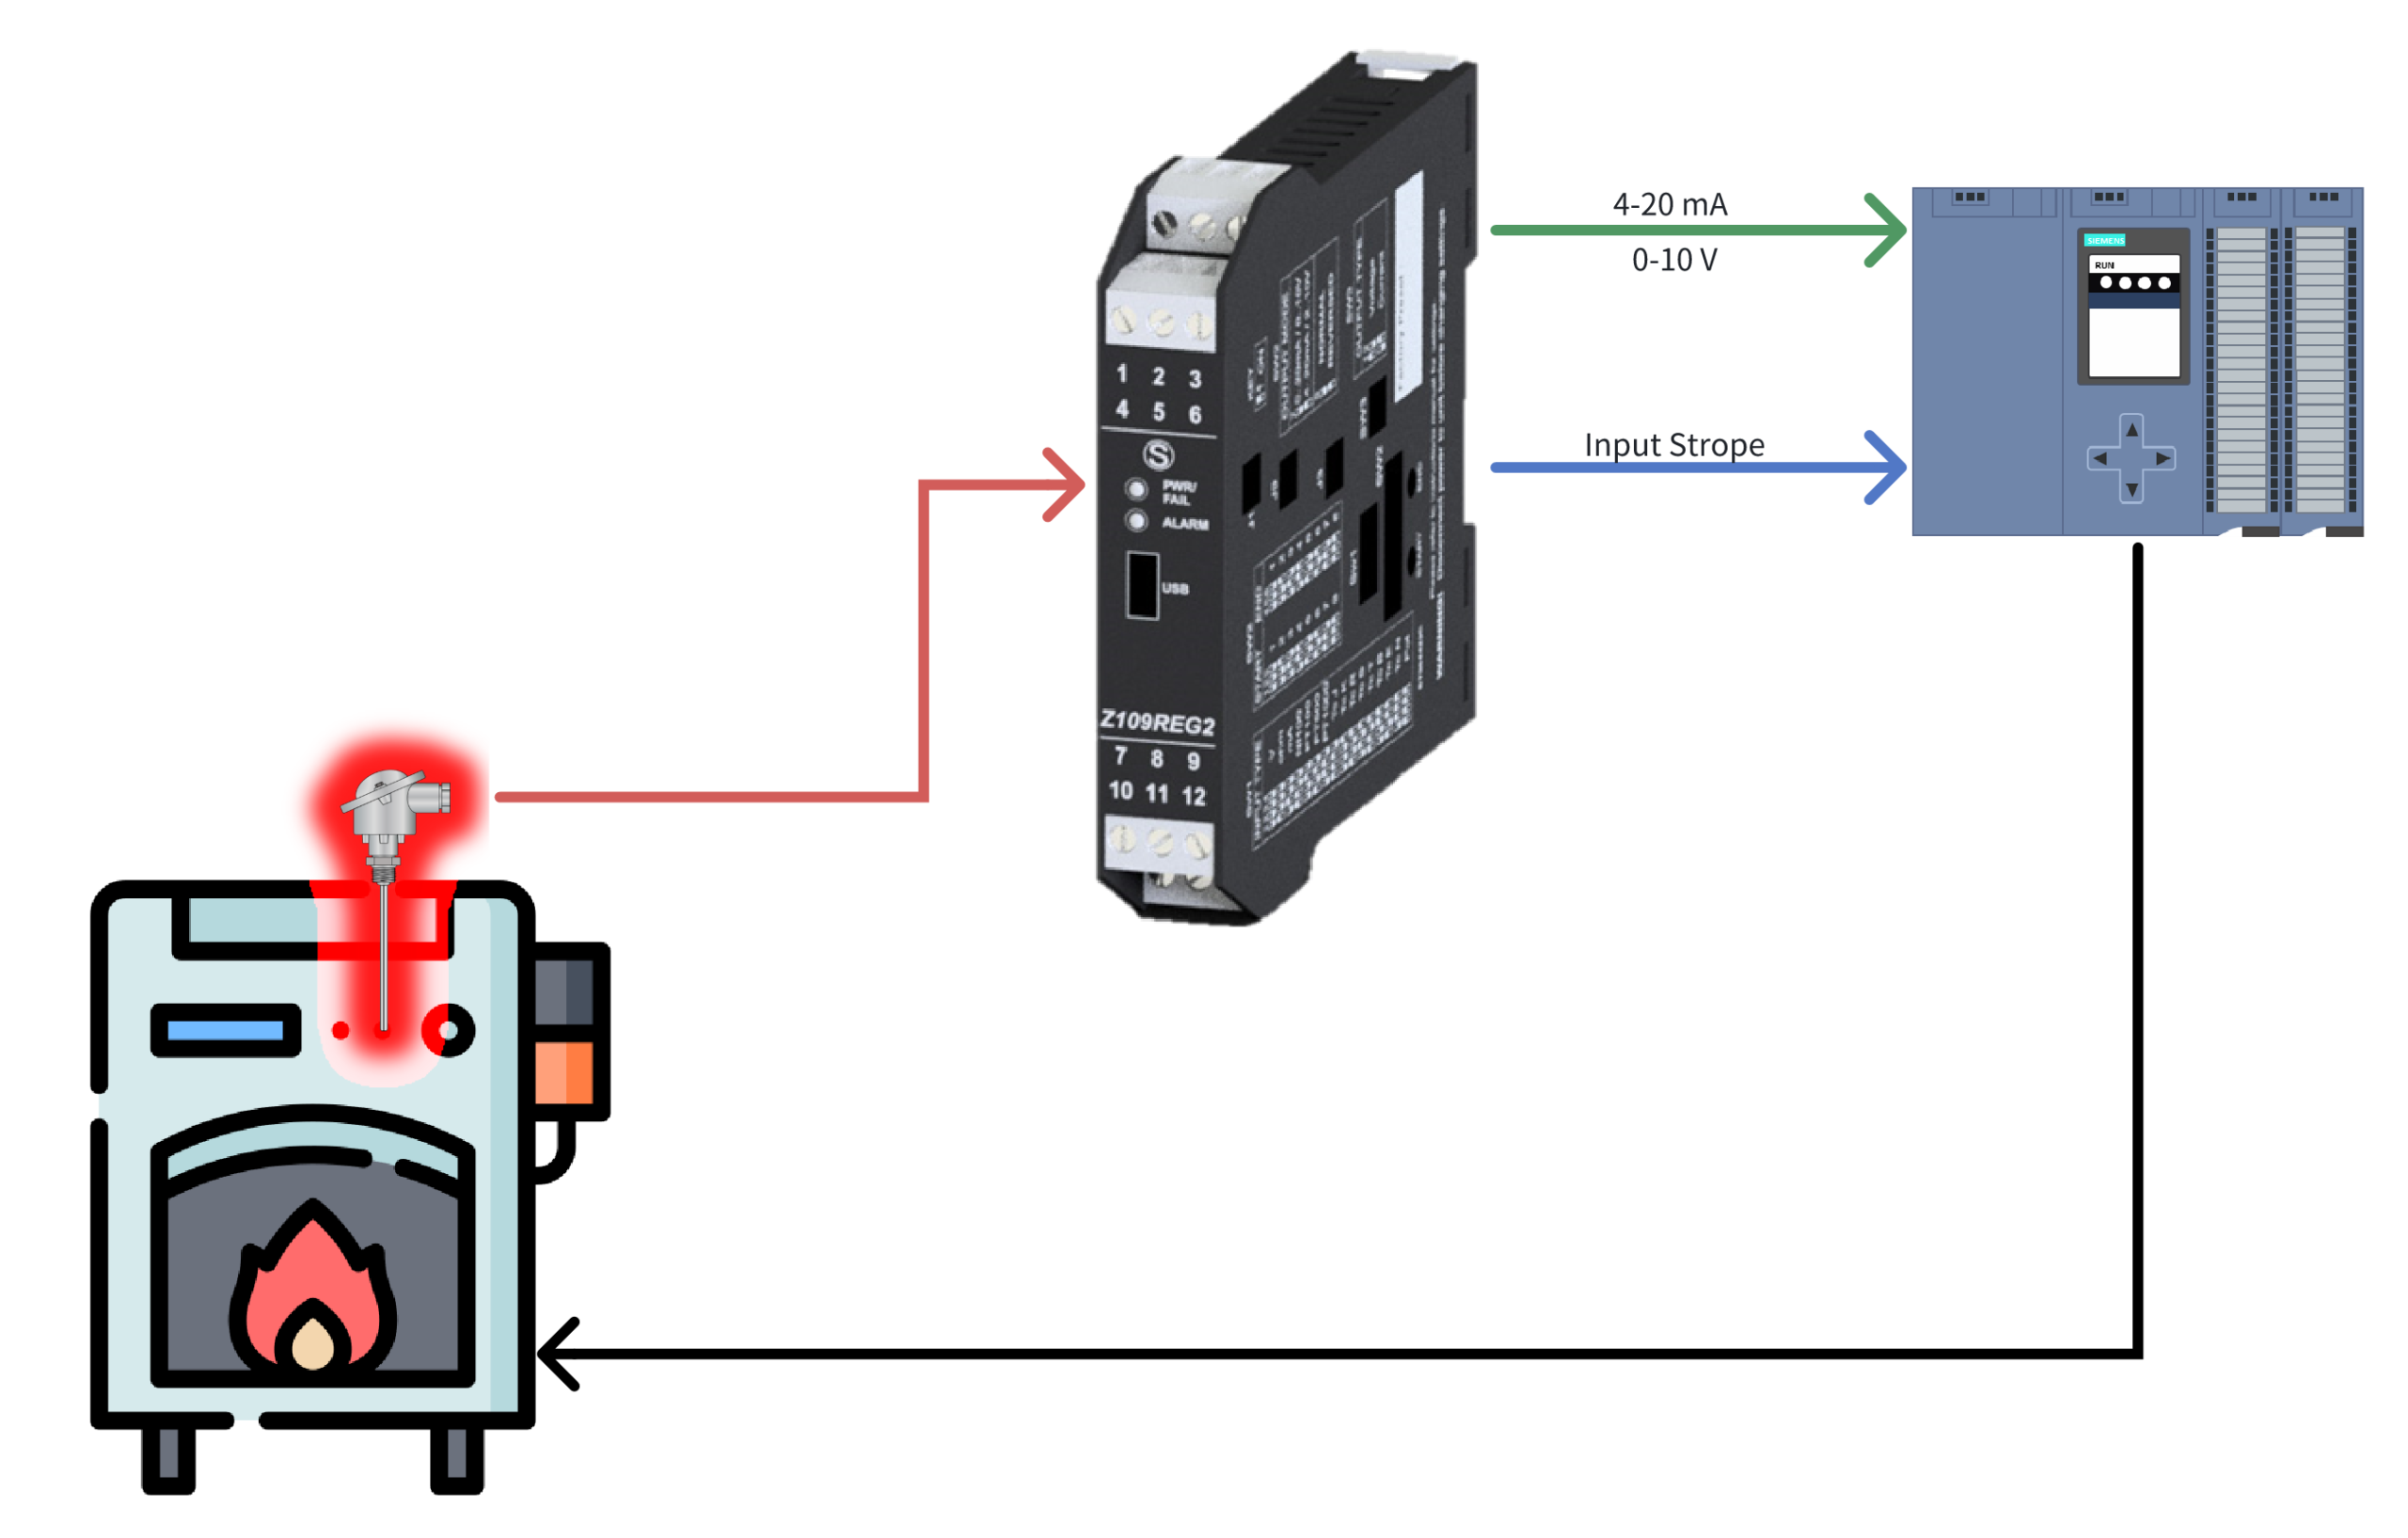 Hệ thống điều khiển vòng kín giữa Z109REG2-1 và PLC